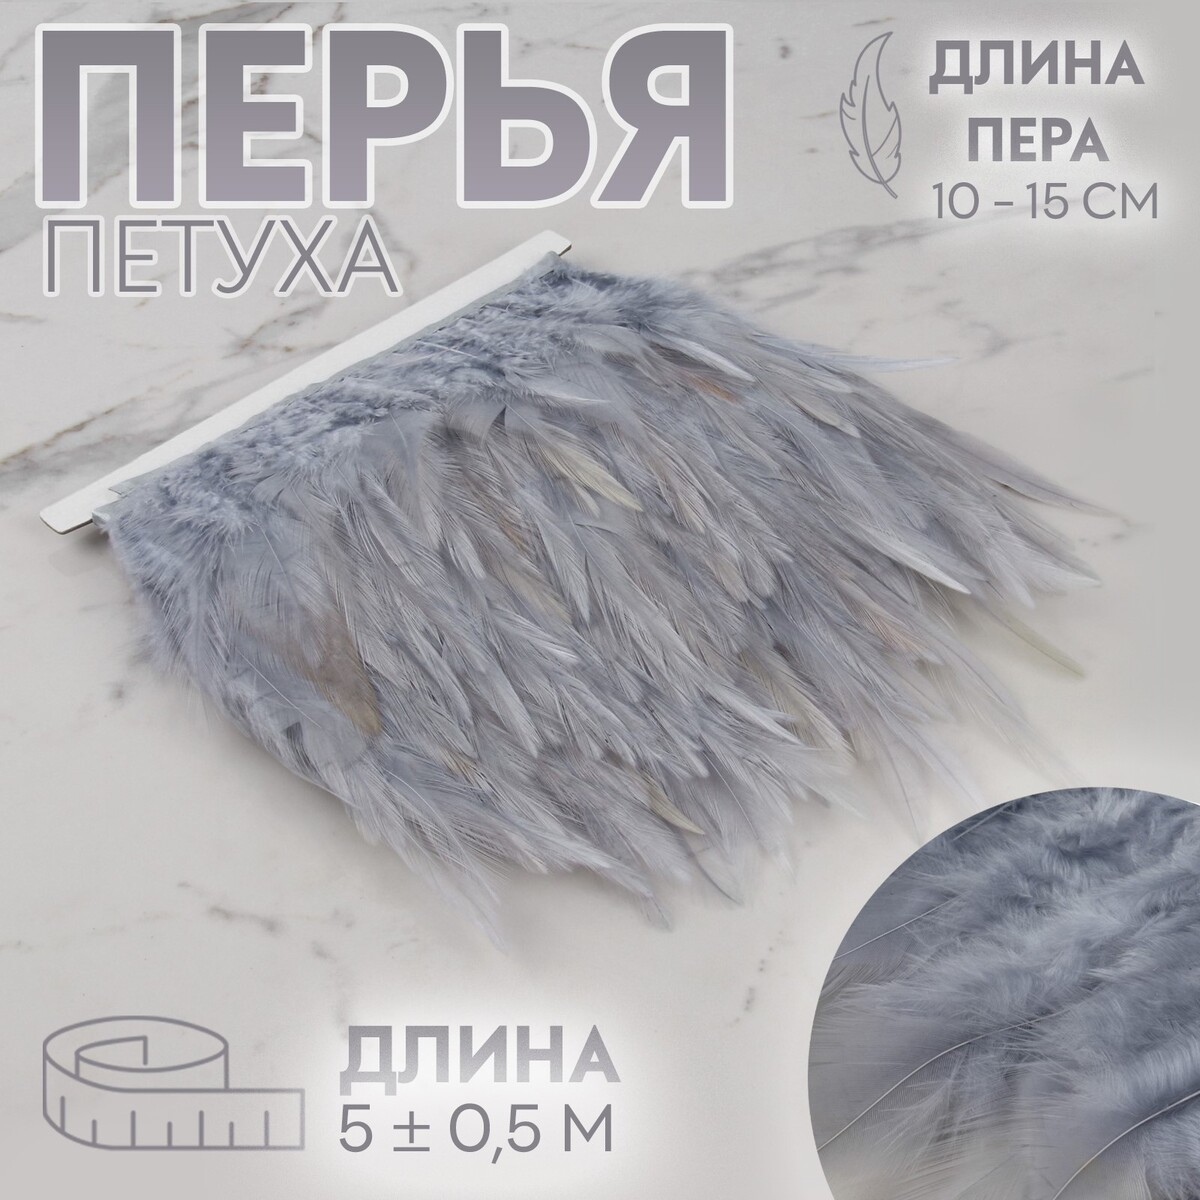 Тесьма с перьями петуха, 10-15 см, 5 ± 0,5 м, цвет серый тесьма с перьями страуса 8 10 см 5 ± 0 5 м бордовый